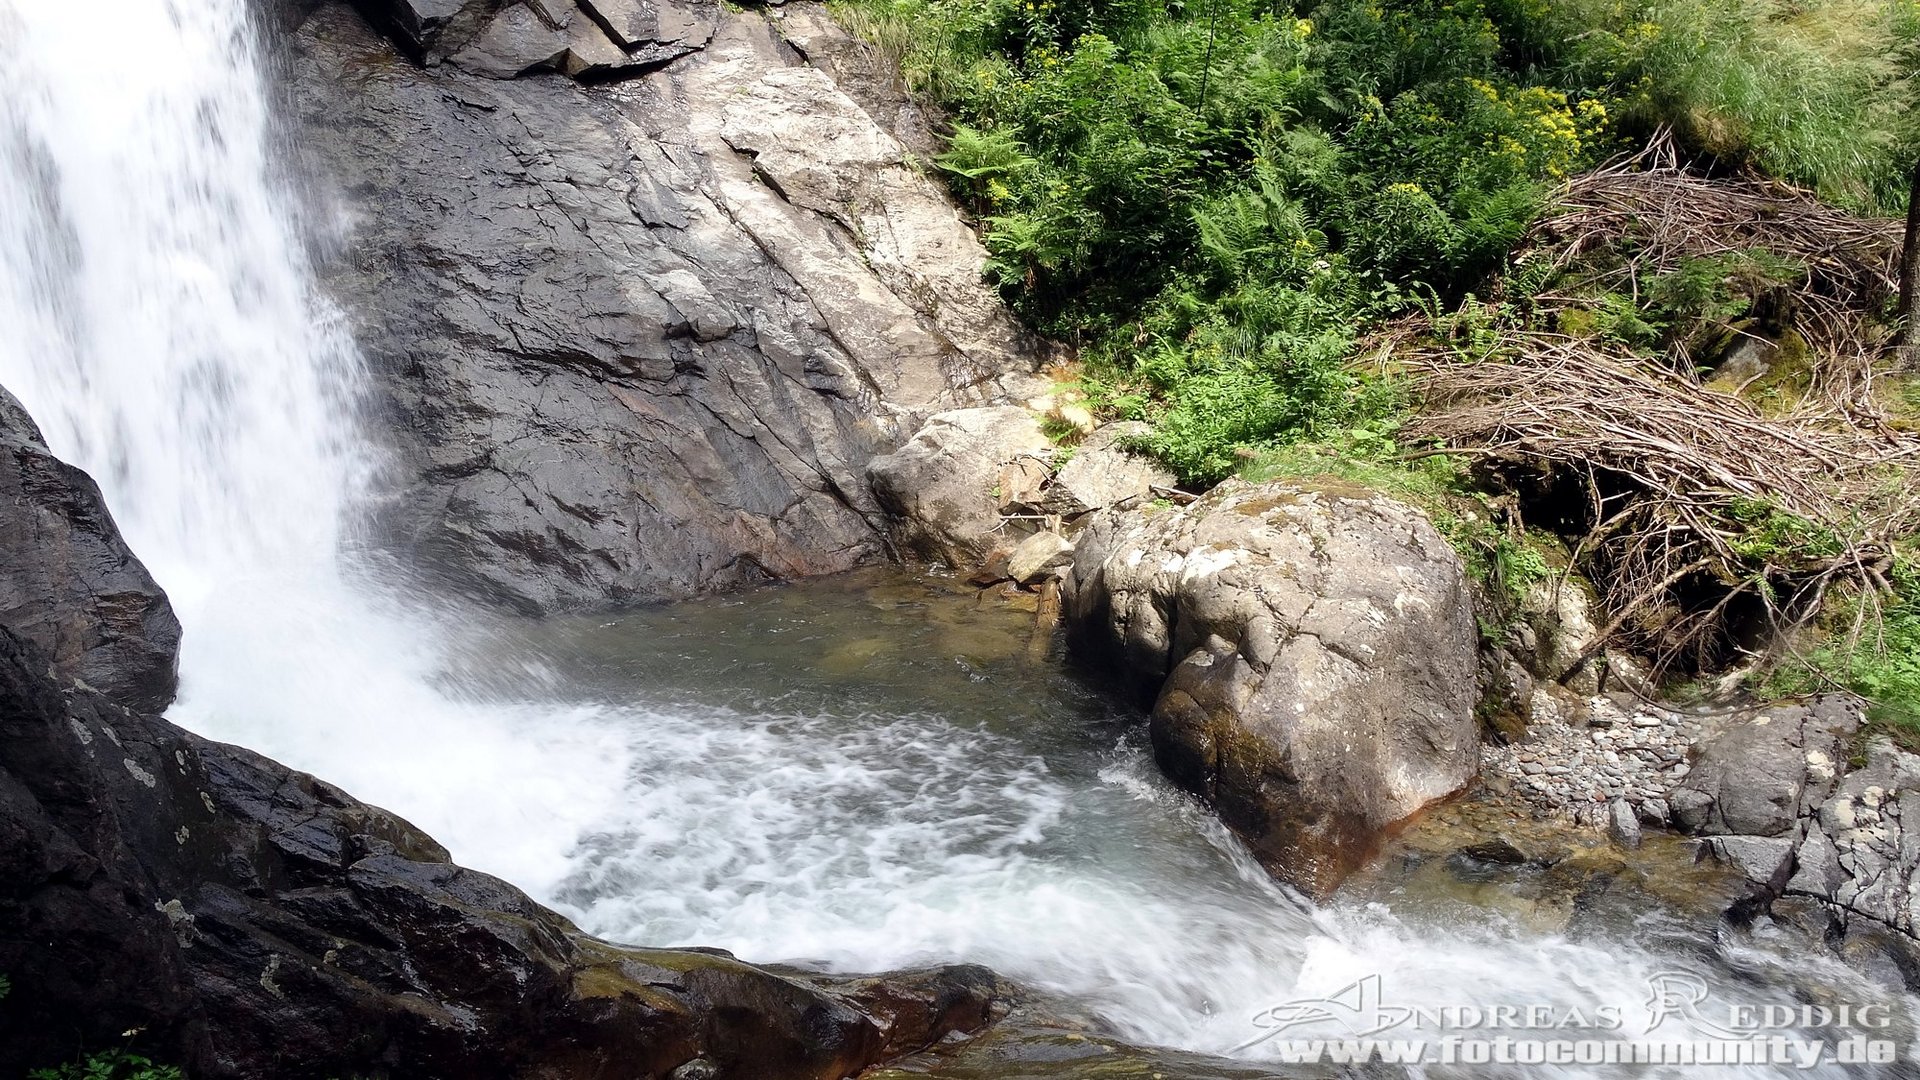 Schöder Wasserfall in der Nähe von Murau/Österreich - 24.07.2015